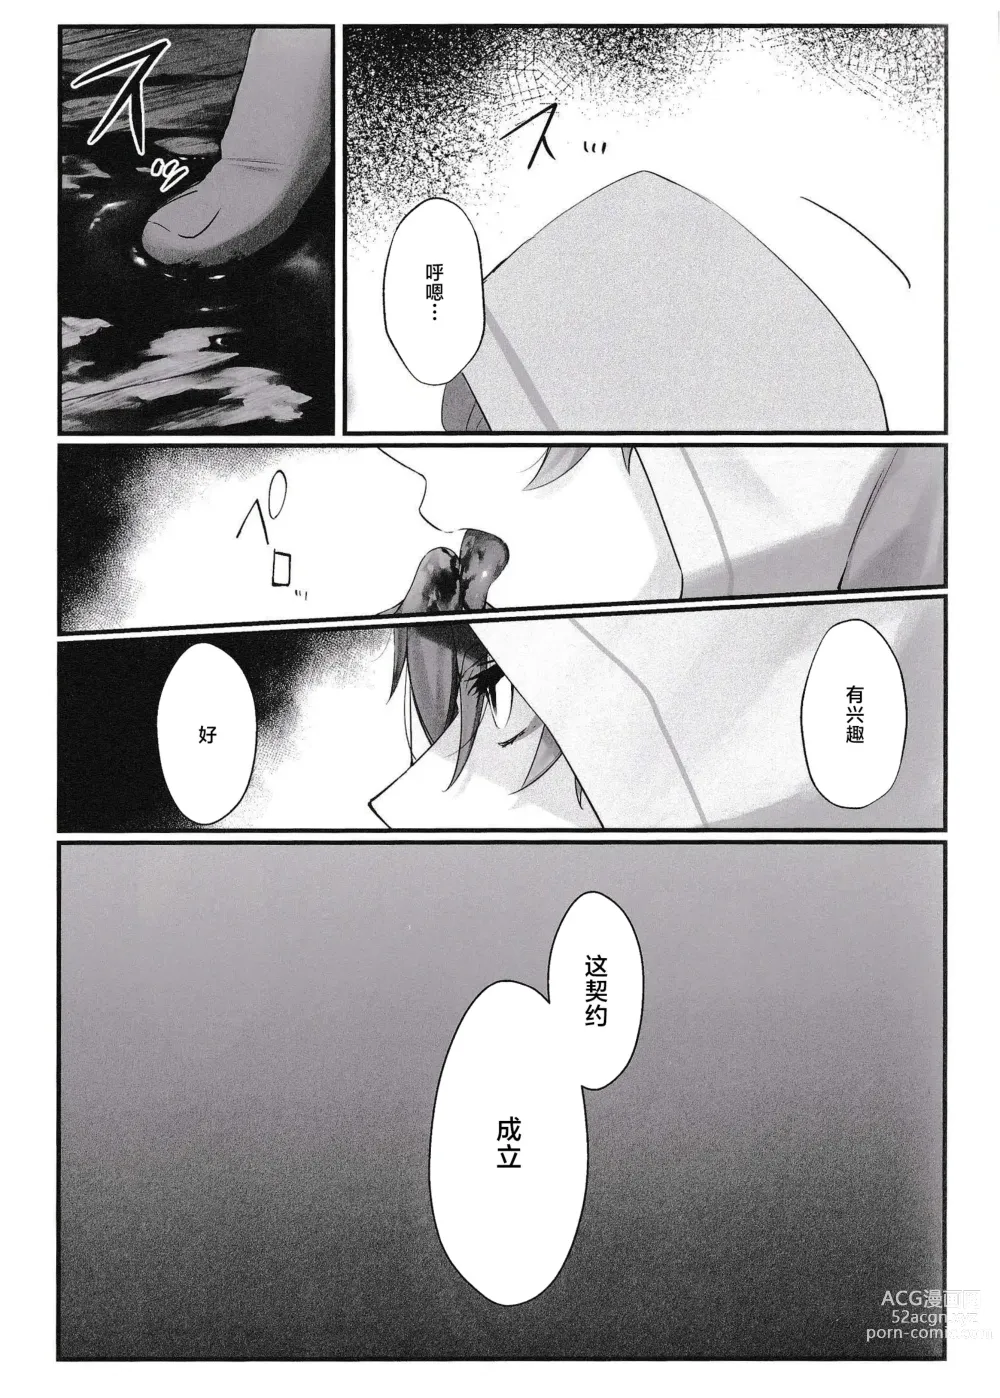 Page 13 of doujinshi Mugen no Sentaku